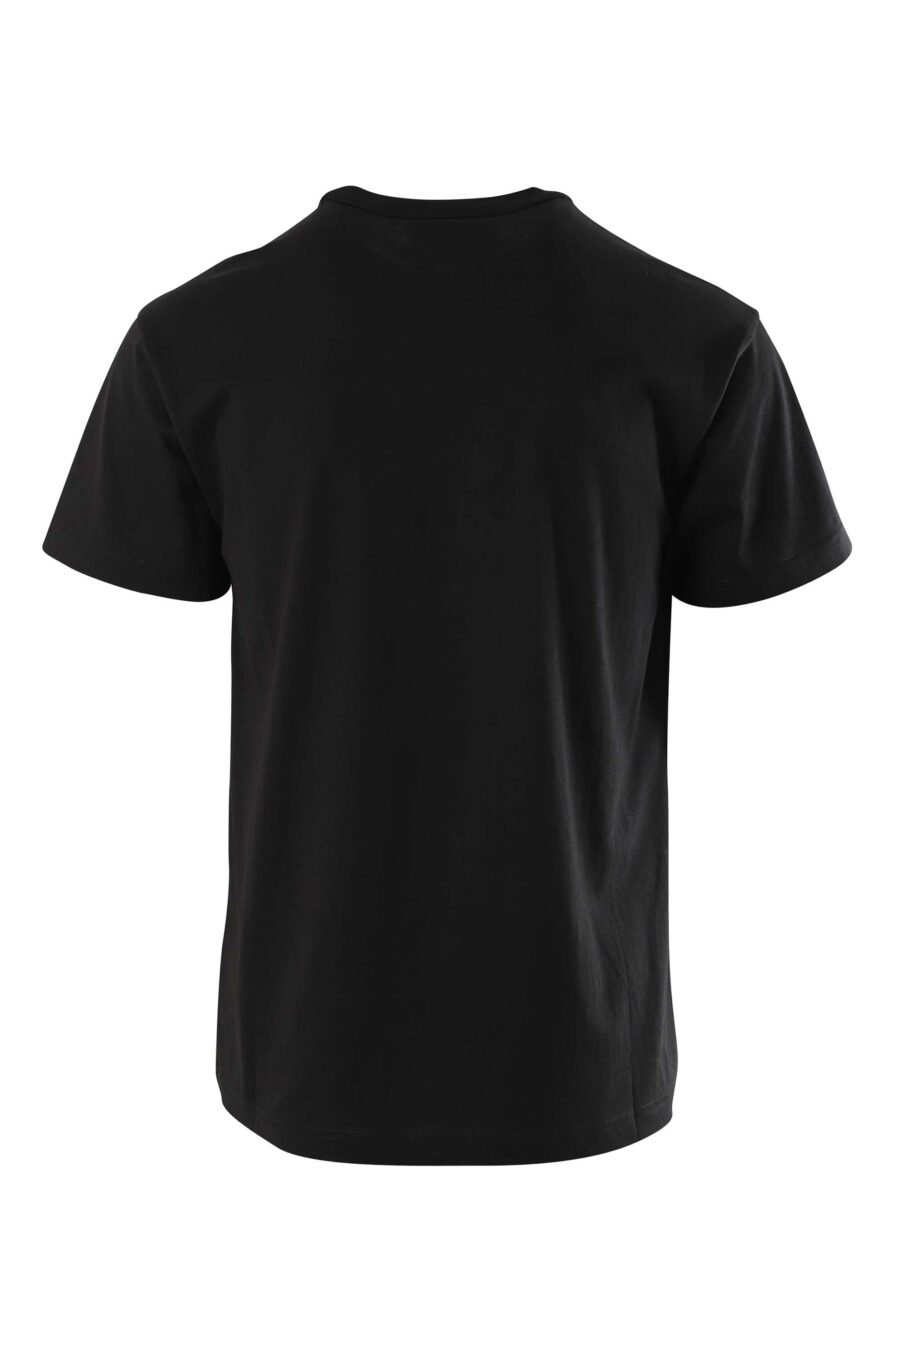 T-shirt preta com maxilogue em contraste - 8052019235449 2